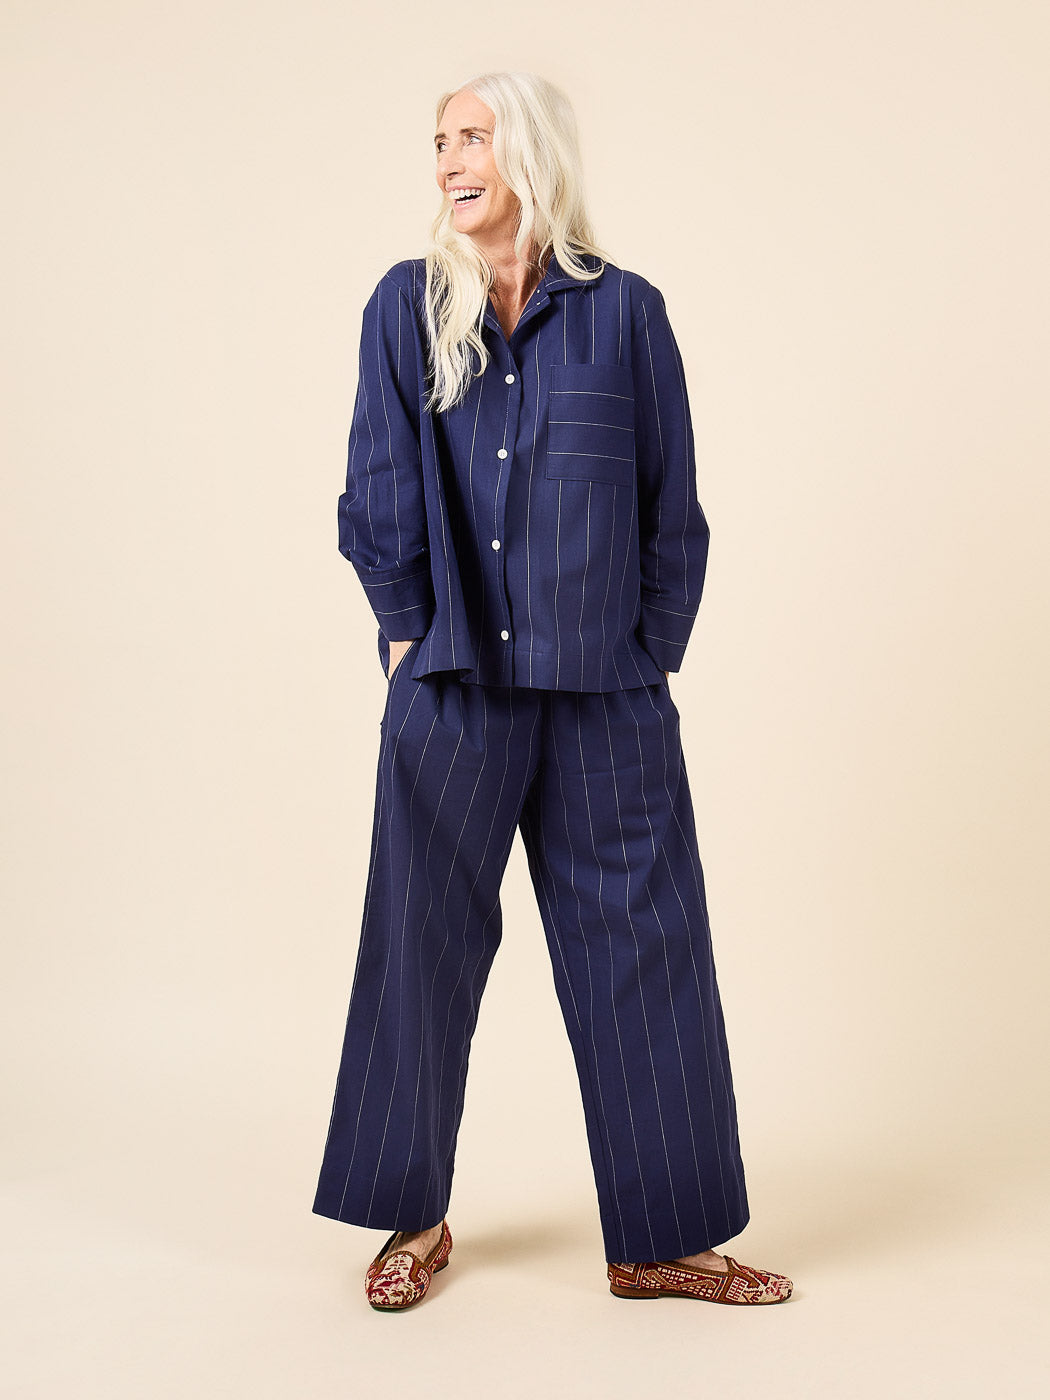 Fran Pajamas | Pajama Bottom + Pajama Top | Closet Core Patterns